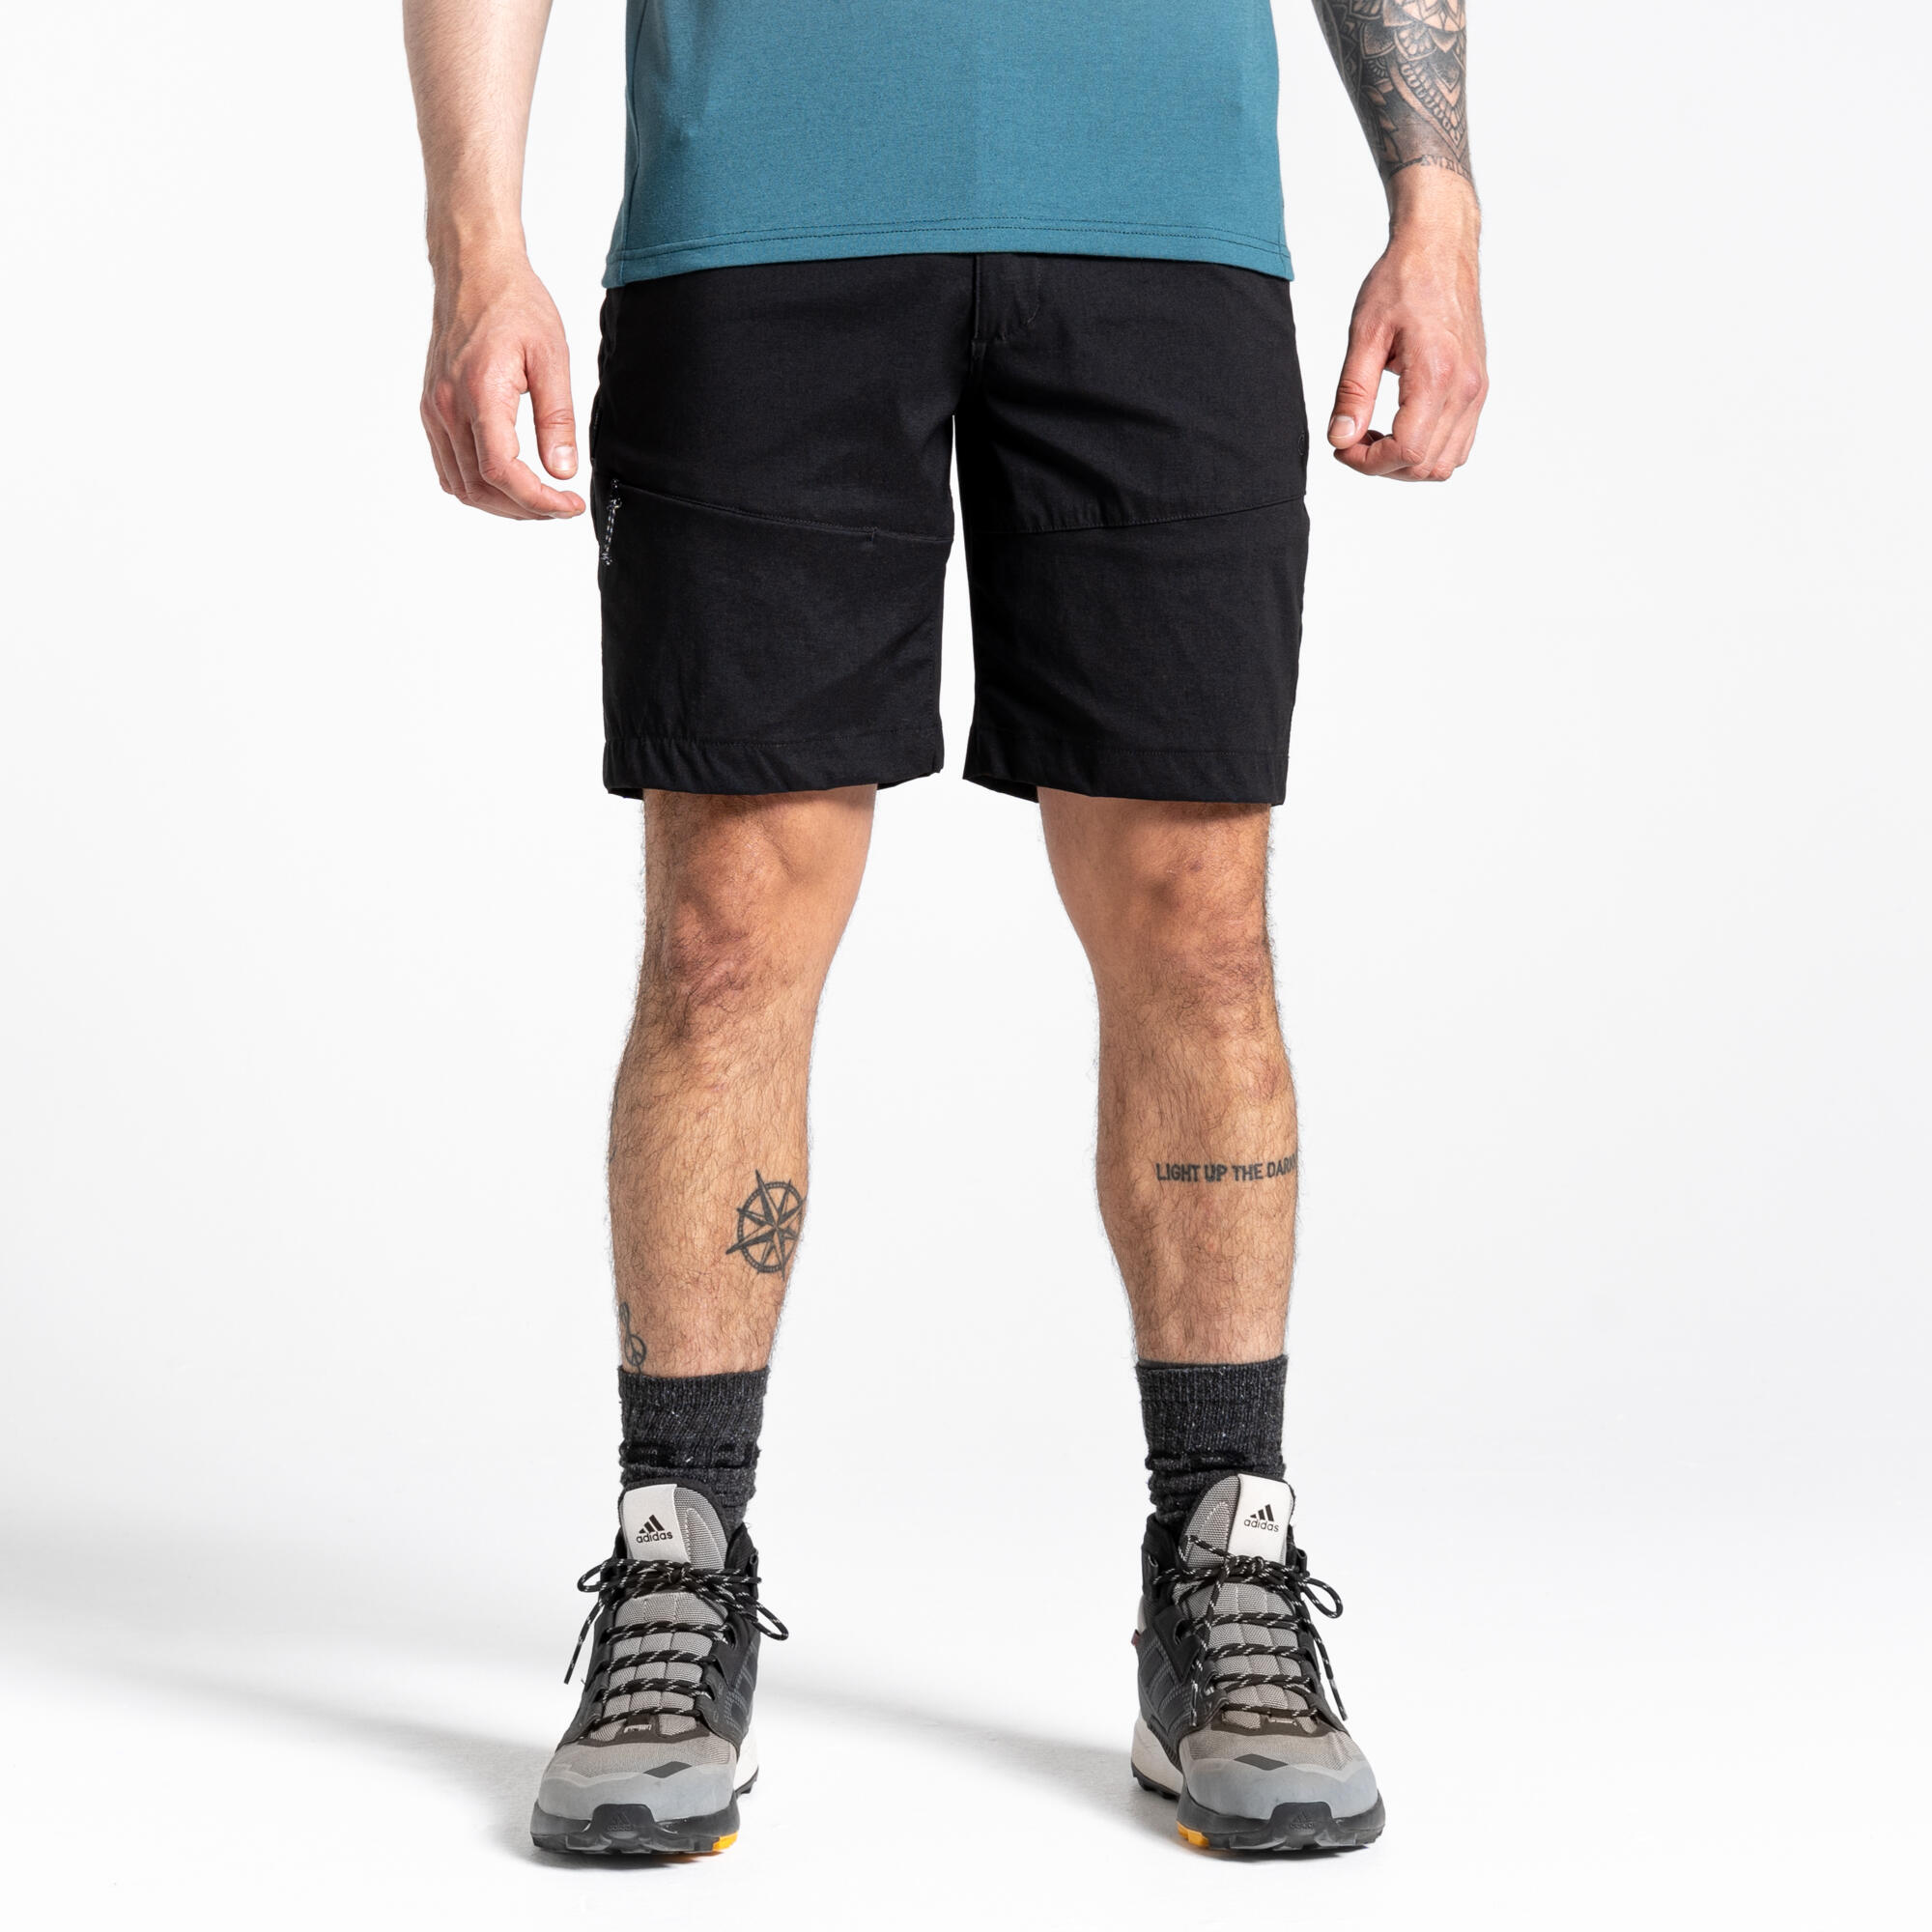 Men's Kiwi Pro Shorts 4/5